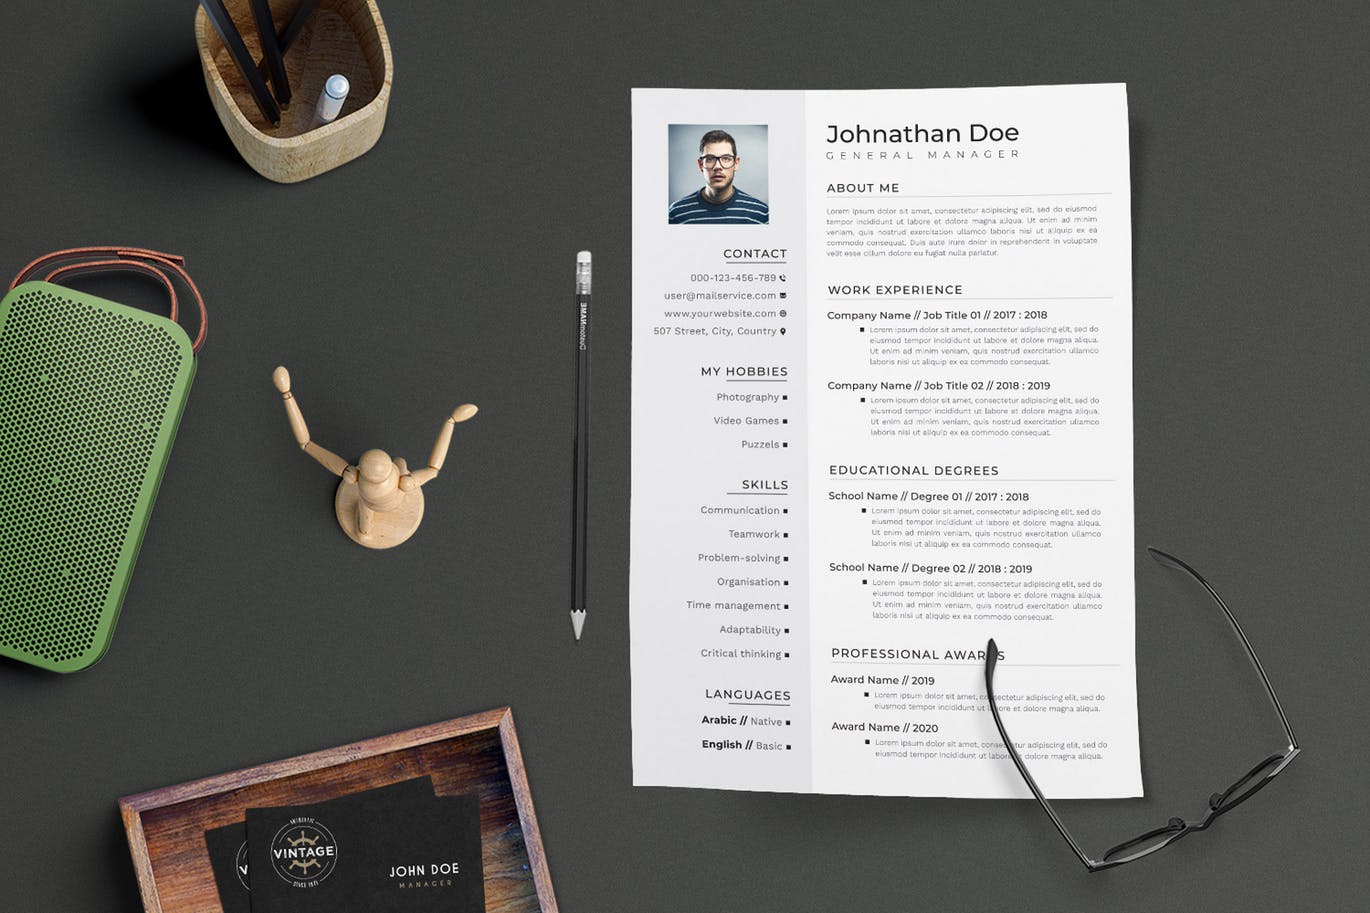 项目管理经理个人电子蚂蚁素材精选简历模板 CV Resume插图(1)